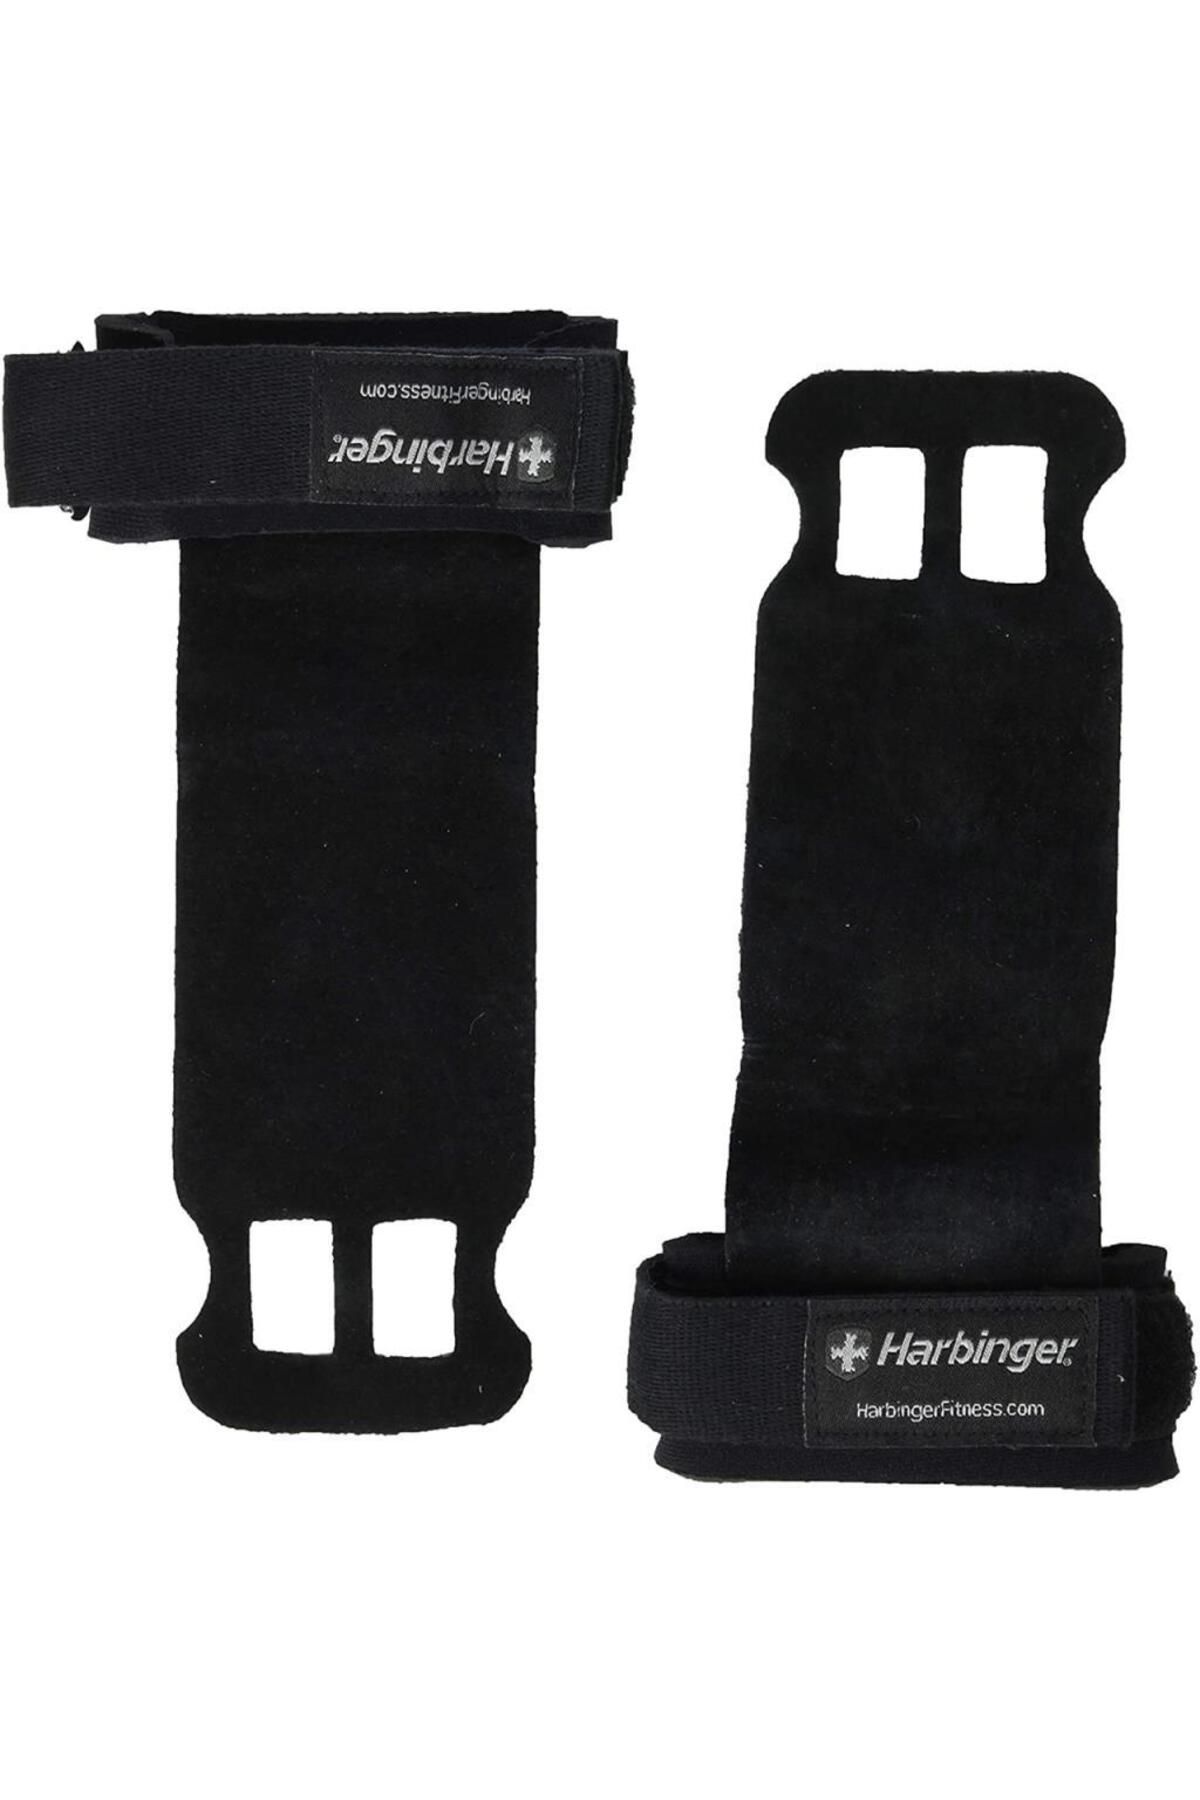 Harbinger Palm Grips - Xl Unisex Fitness Eldiveni Black